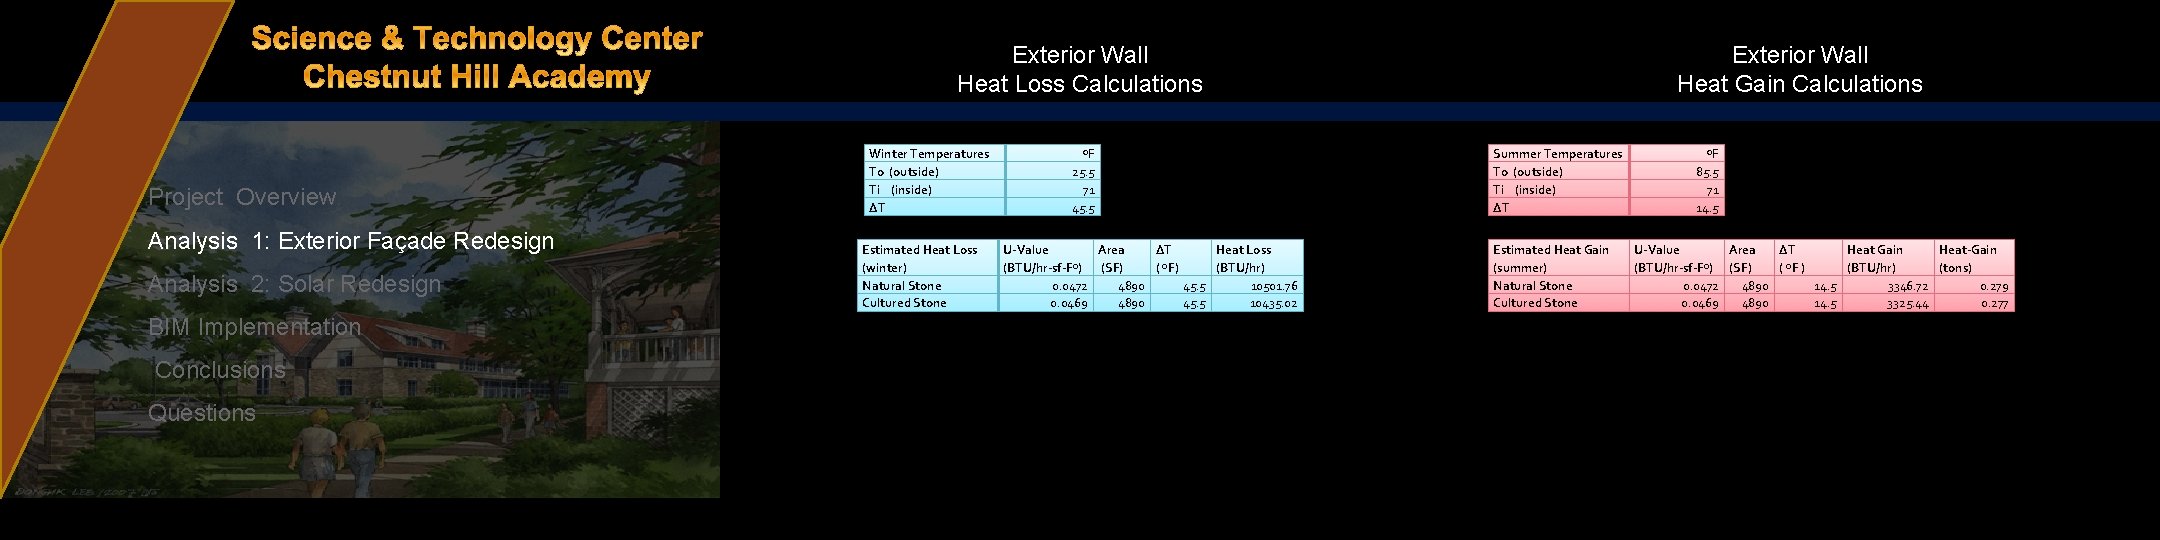 Exterior Wall Heat Gain Calculations Exterior Wall Heat Loss Calculations Project Overview Analysis 1: